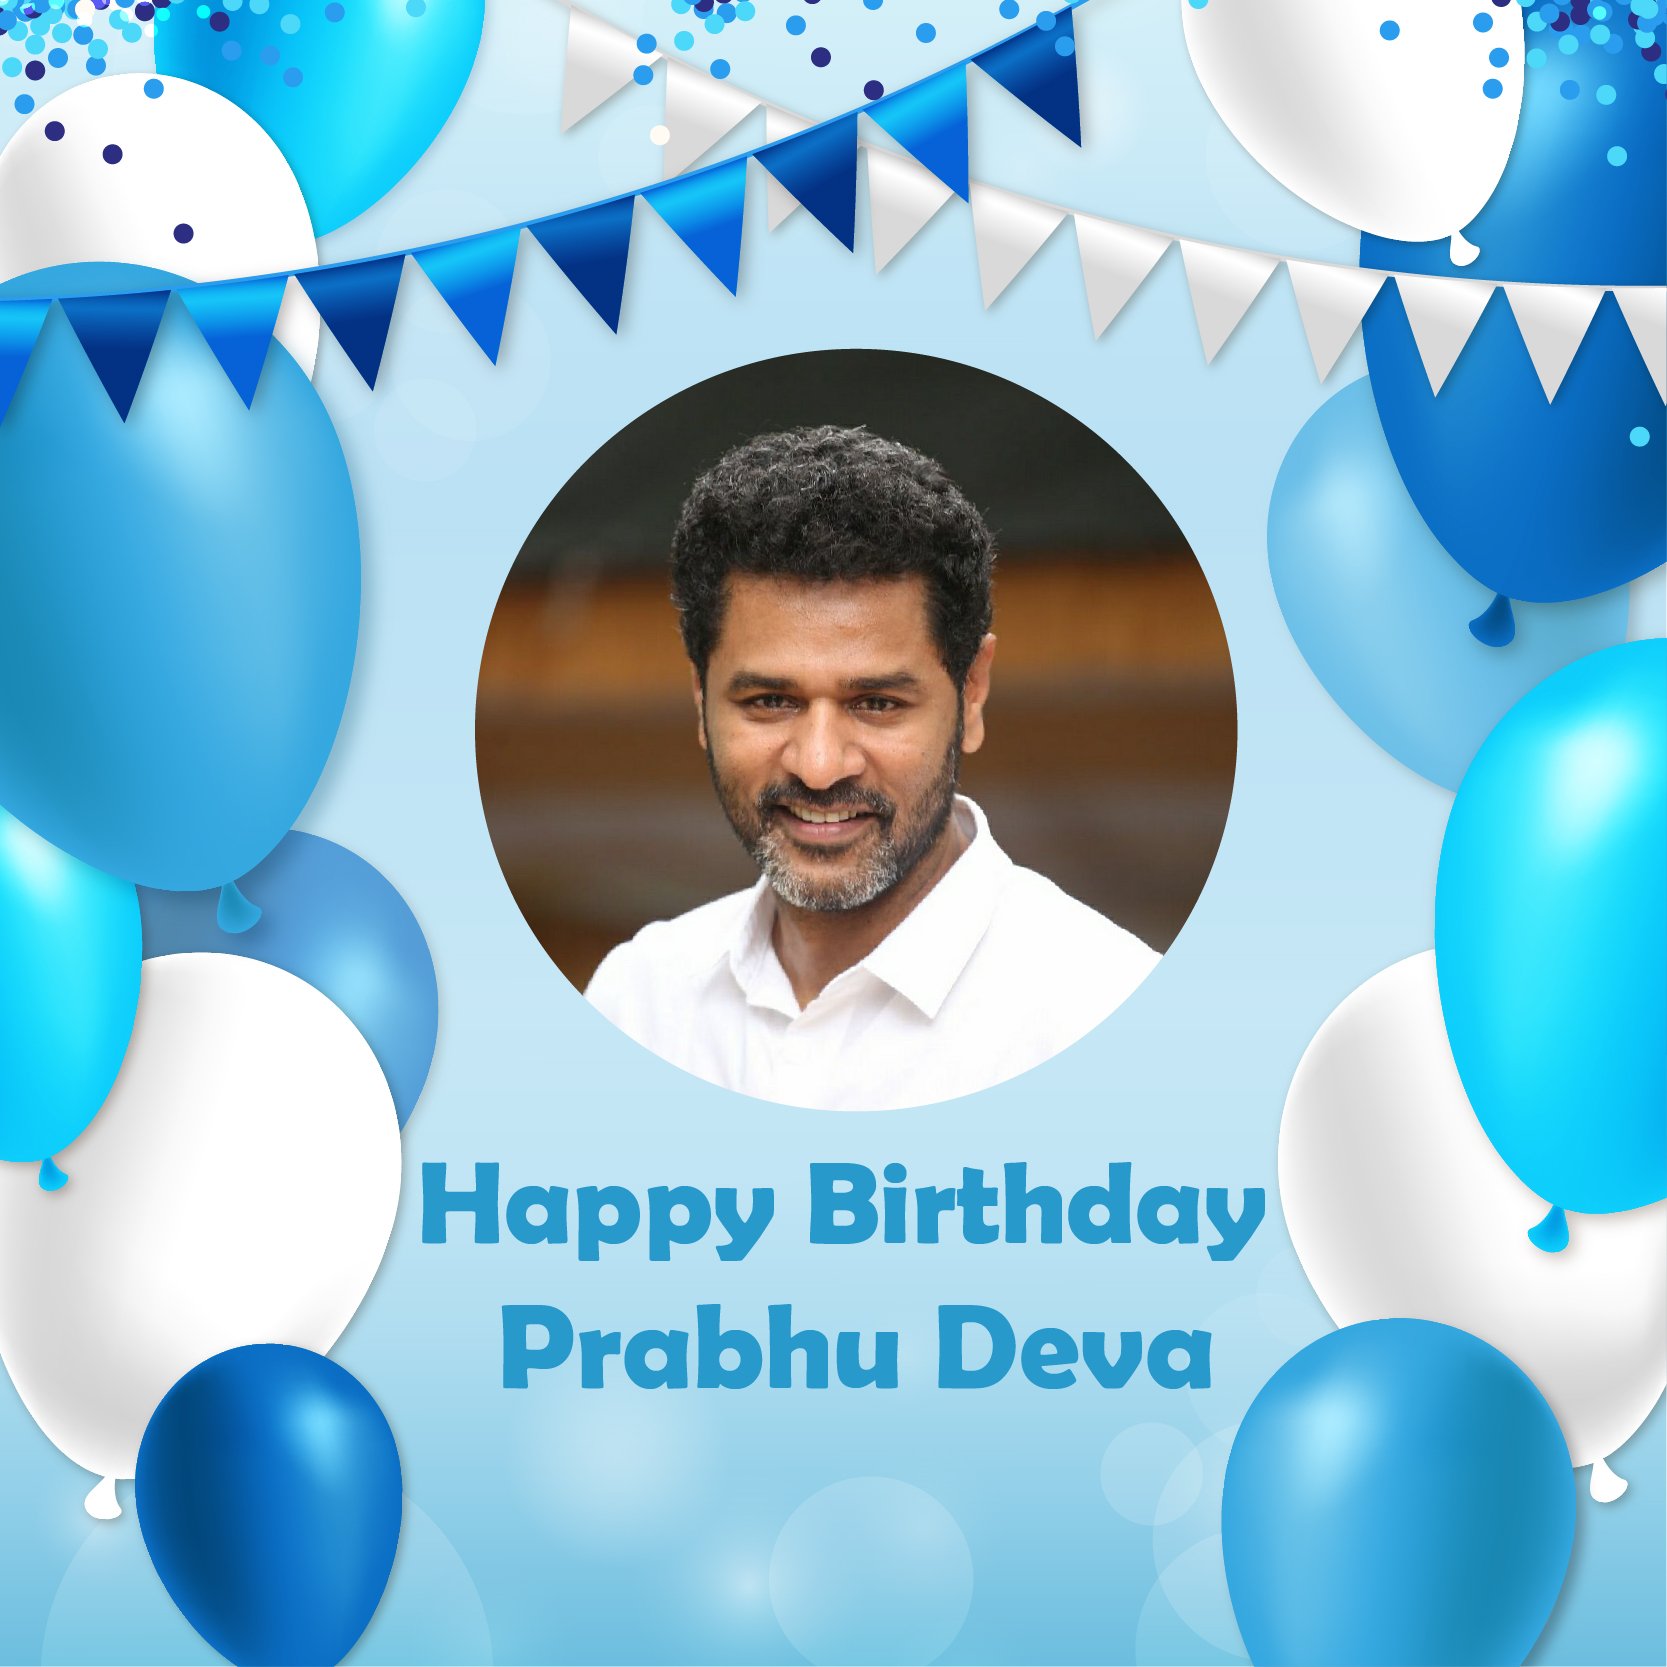 Happy birthday to prabhu deva 